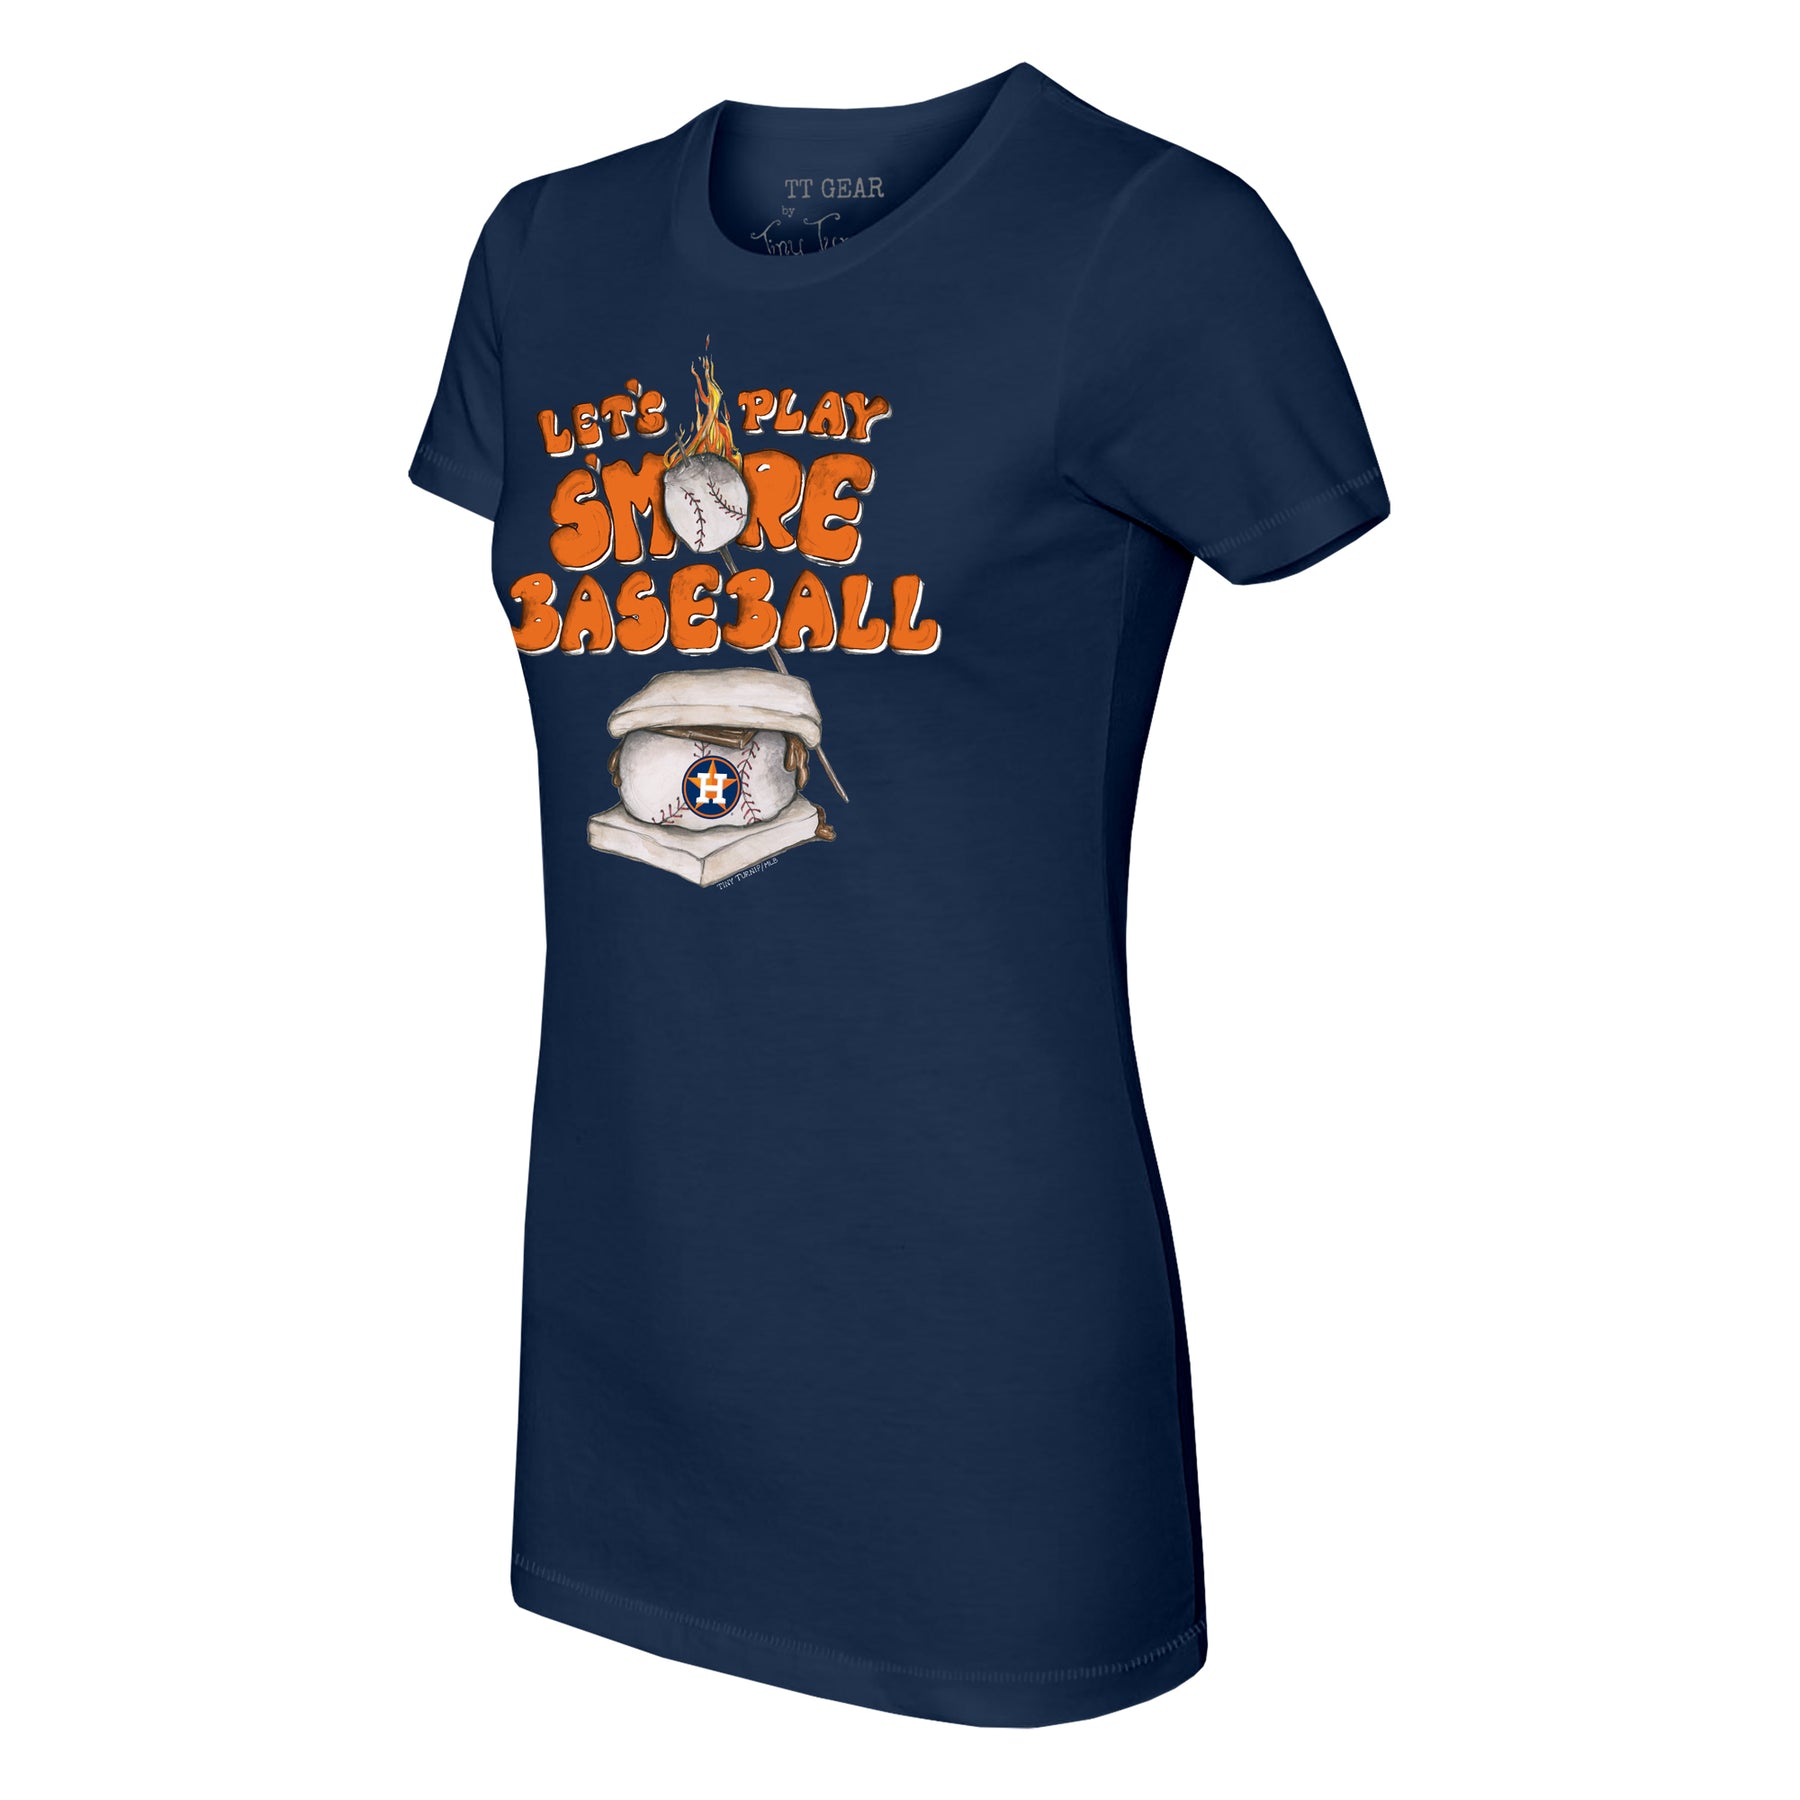 Tiny Turnip Houston Astros S'mores Tee Shirt Women's Large / White